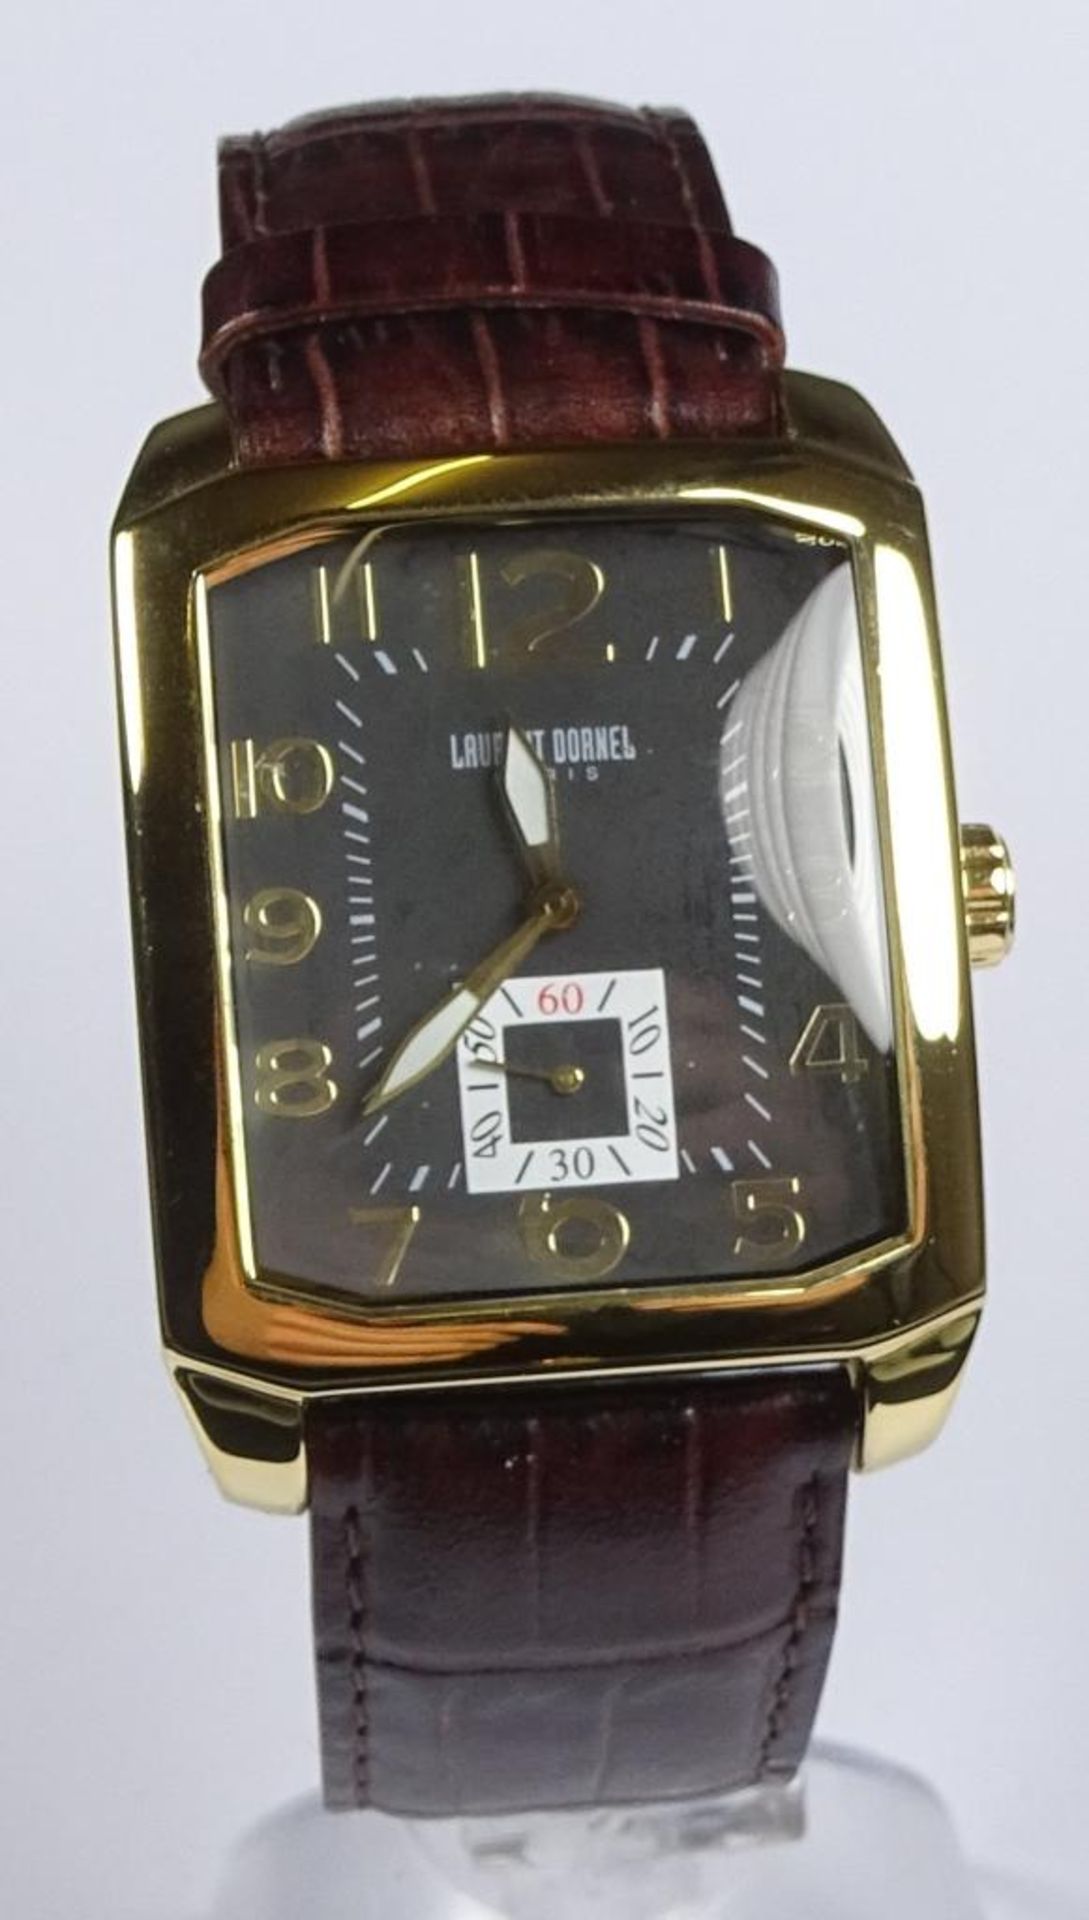 Armbanduhr,"Laurent Dornel", Quartz,Funktion nicht geprüf - Bild 2 aus 4